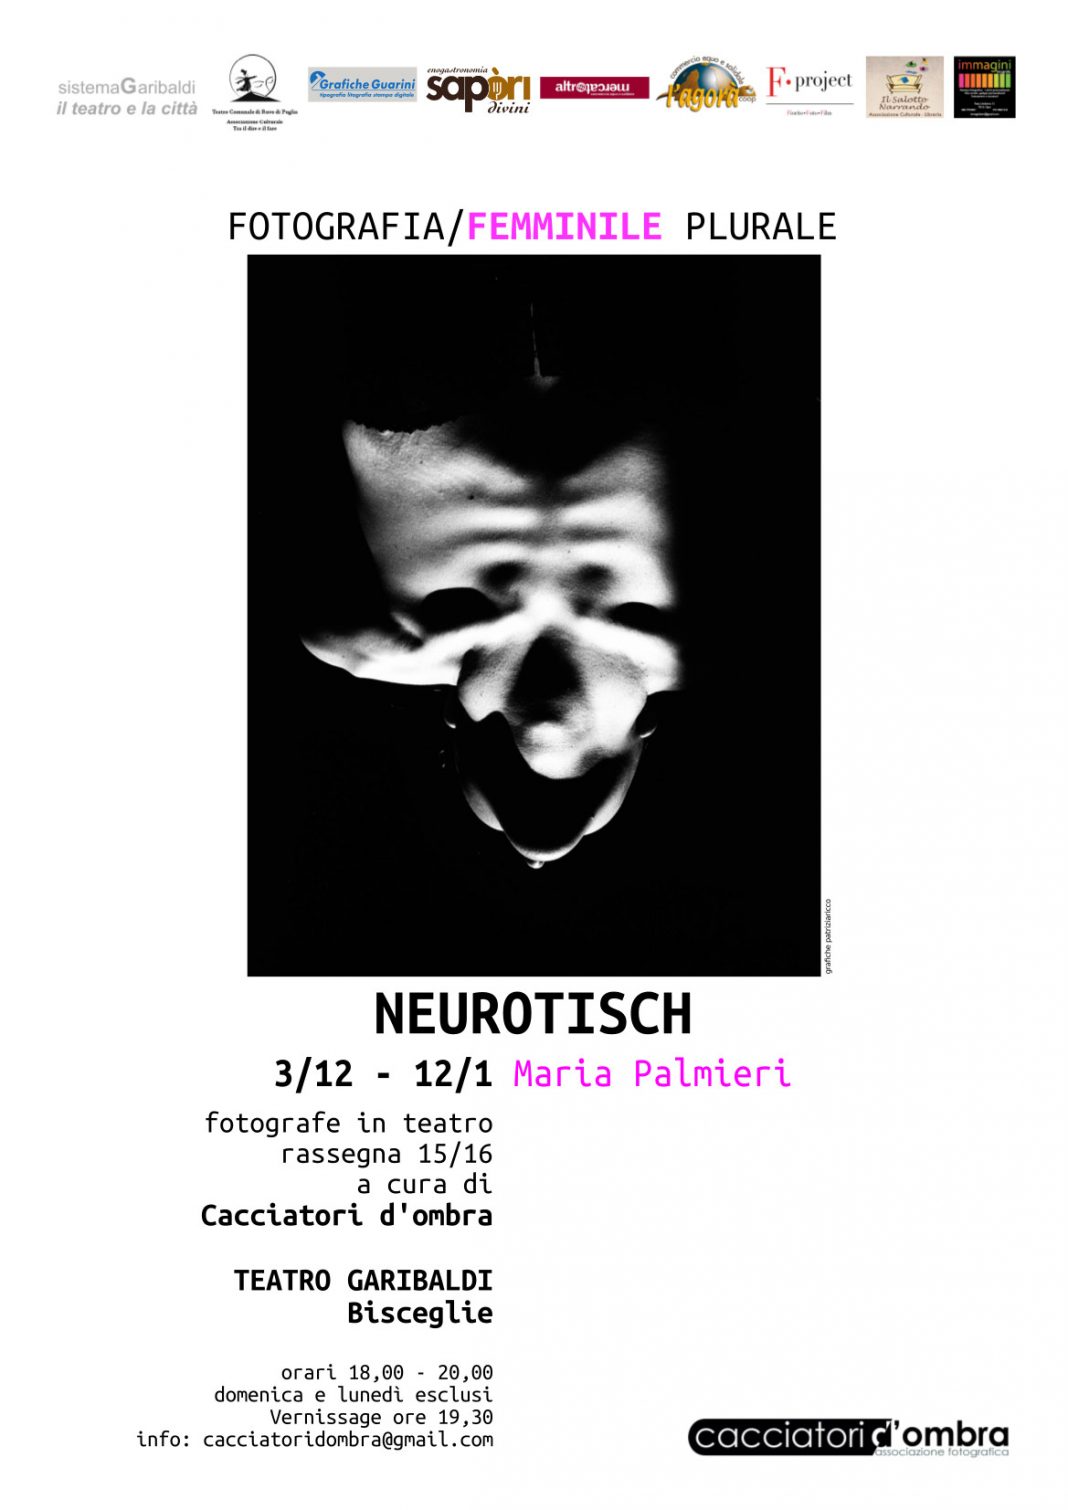 Maria Palmieri – Neurotischhttps://www.exibart.com/repository/media/eventi/2015/11/maria-palmieri-8211-neurotisch-1068x1510.jpg